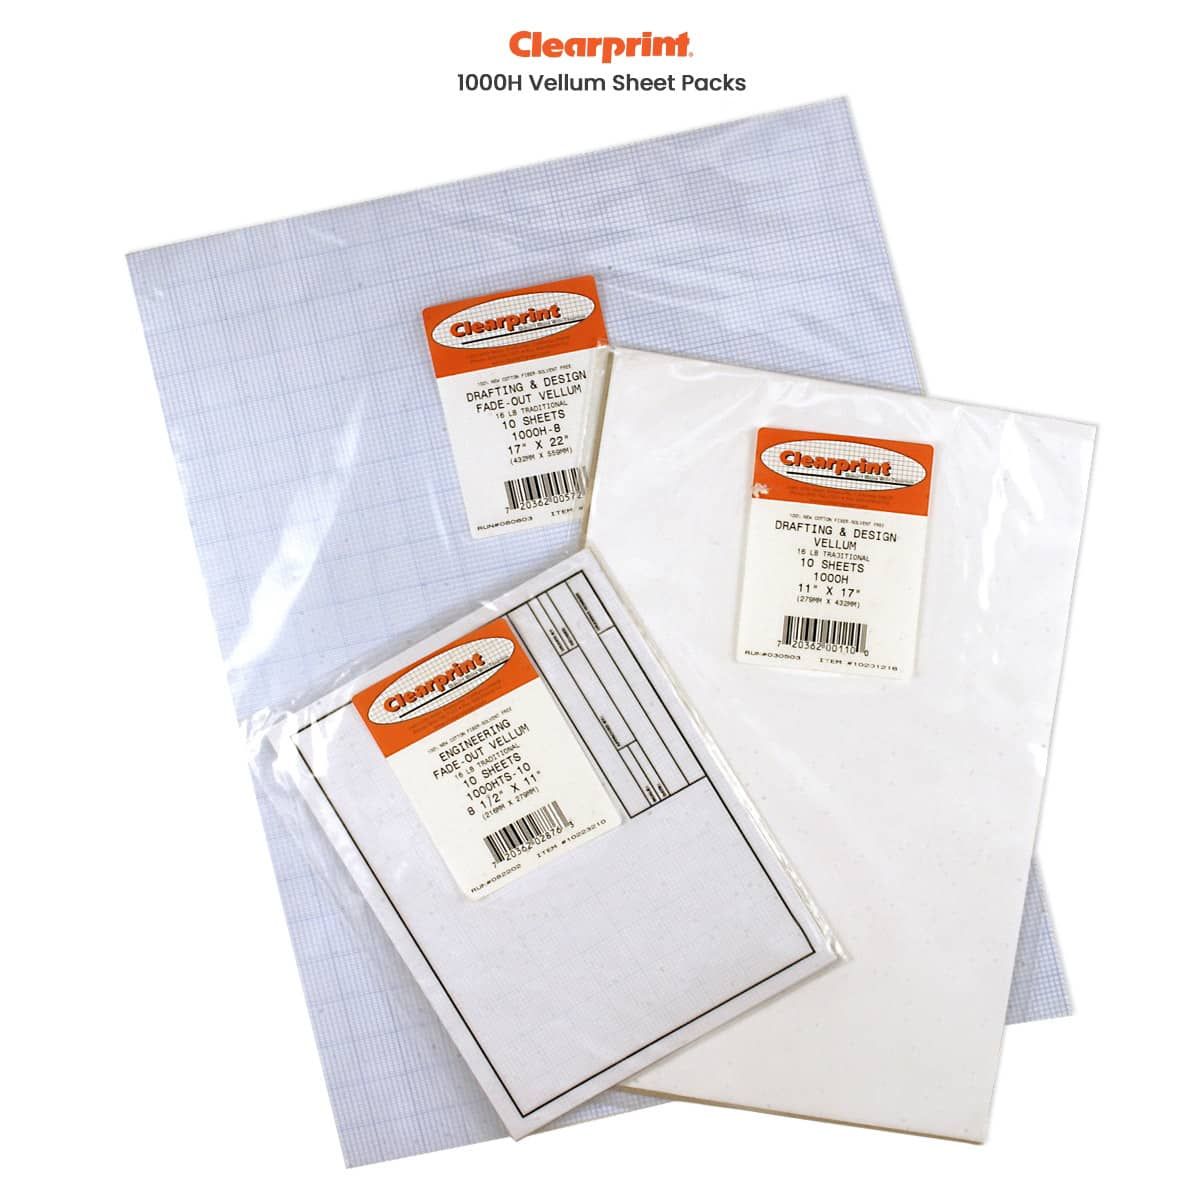 Clearprint Vellum Sheet Packs